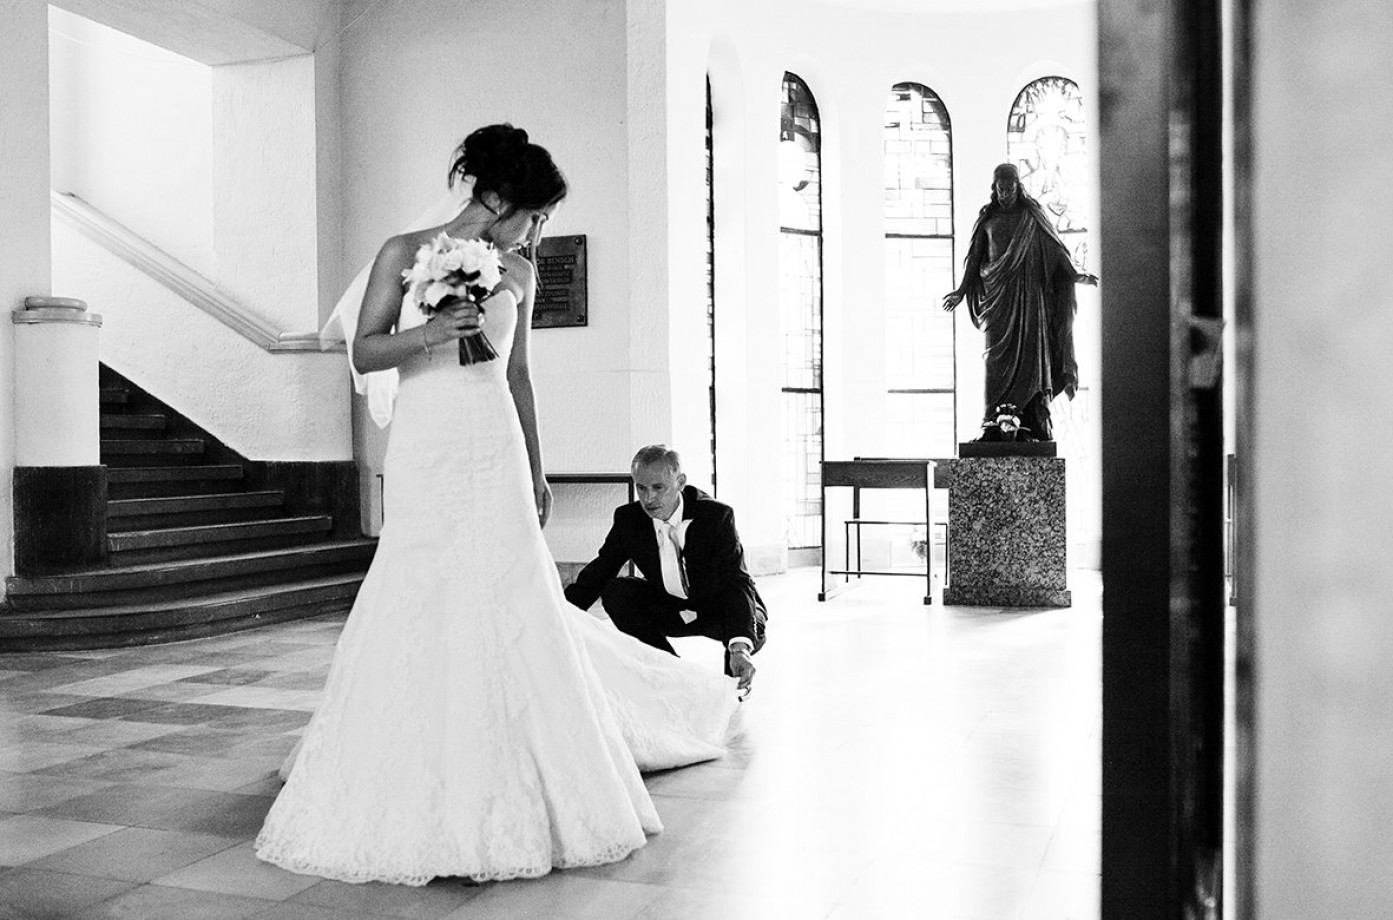 zdjęcia szczecin fotograf lukasz-sakowski portfolio zdjecia slubne inspiracje wesele plener slubny sesja slubna